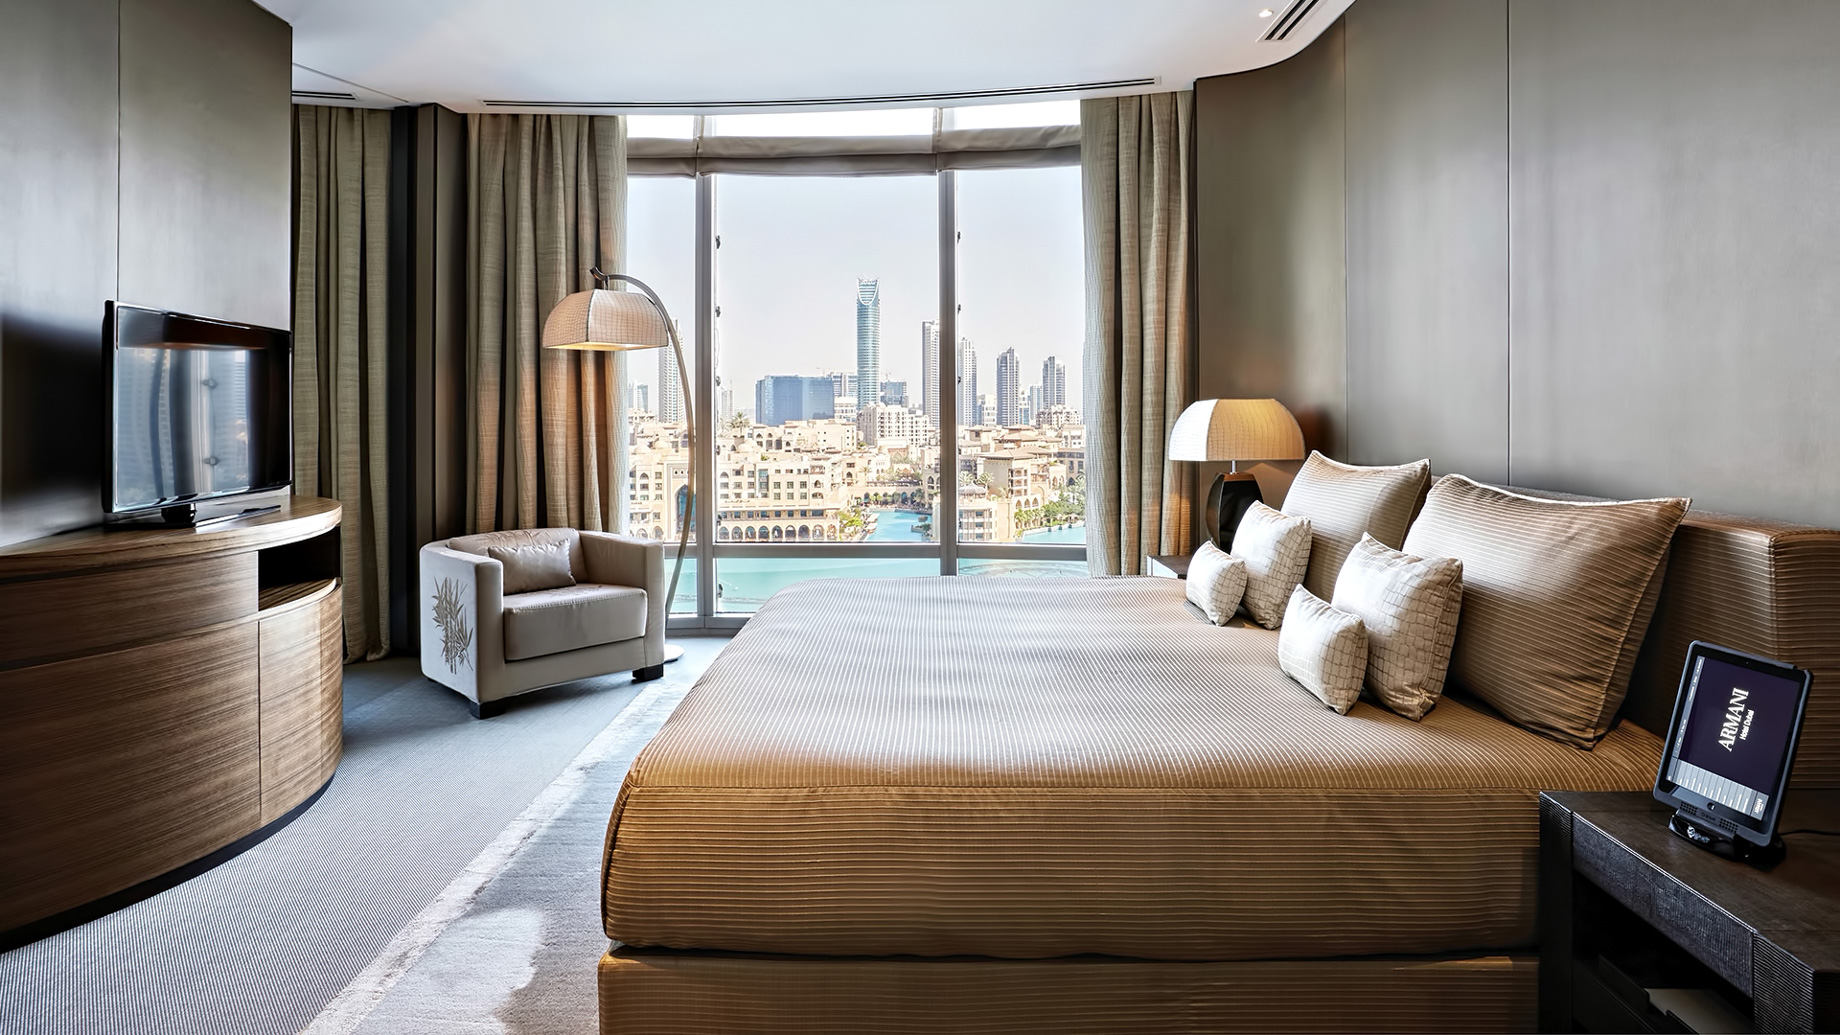 Armani Hotel Dubai 5* by Perfect Tour